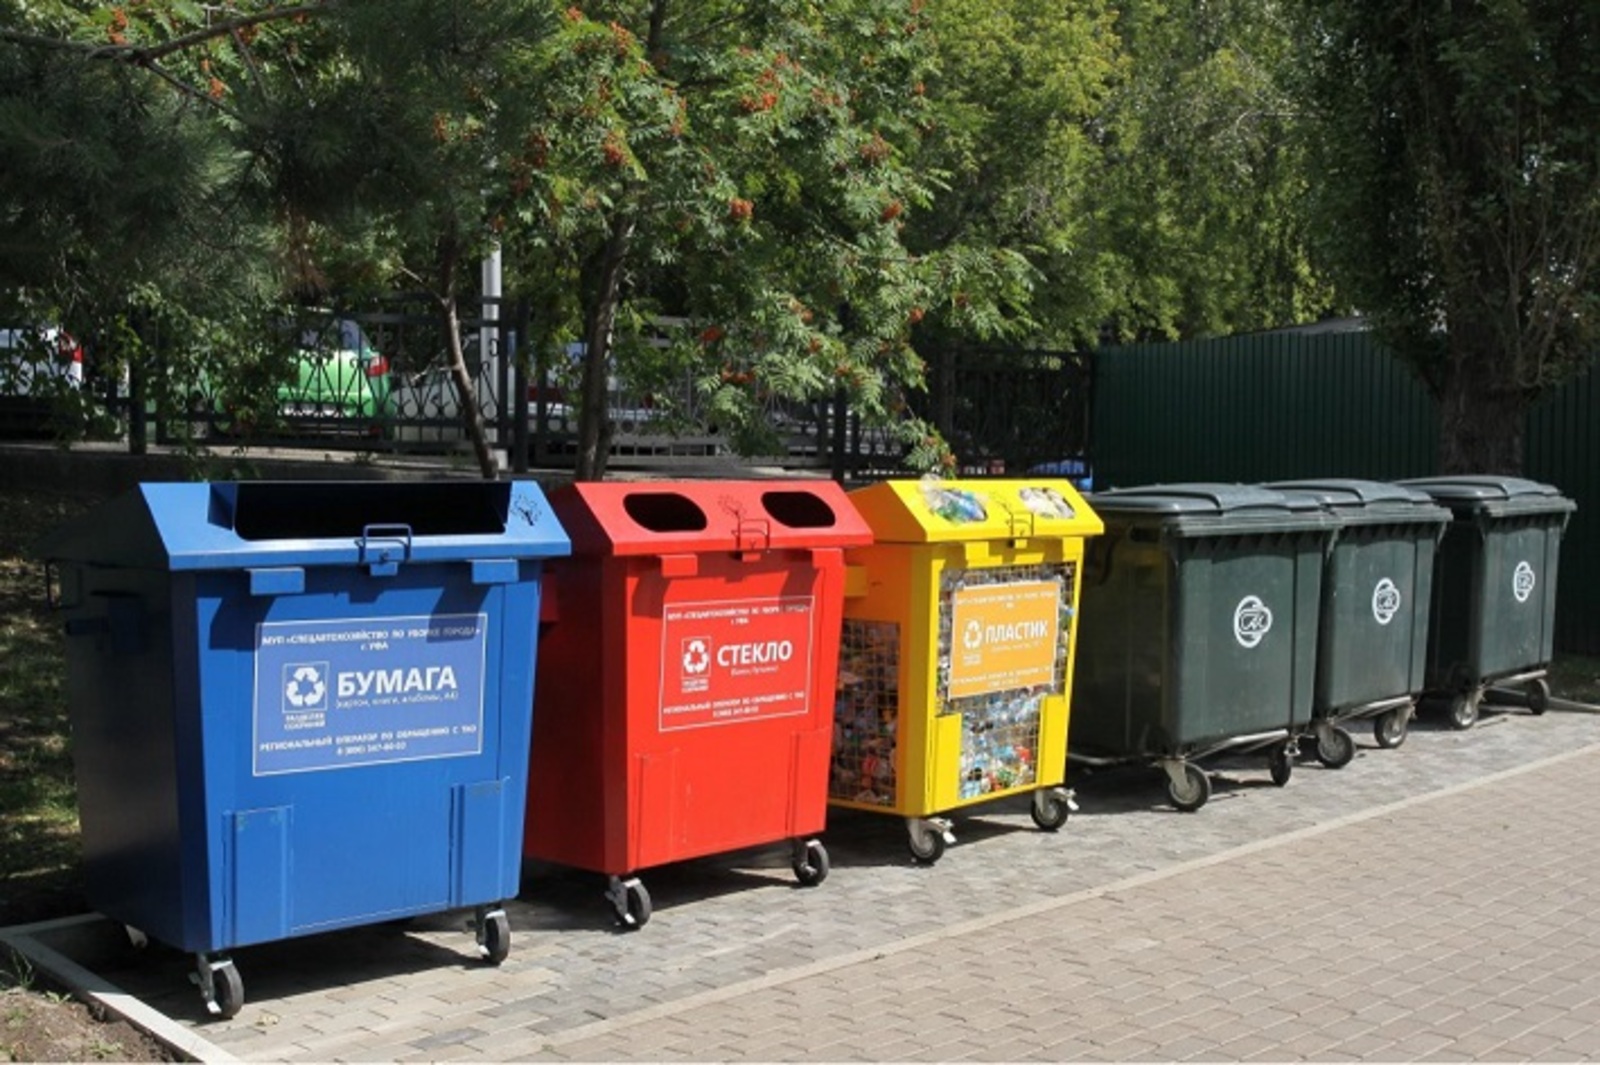 Башкирии выделили субсидию на контейнеры для раздельного сбора мусора